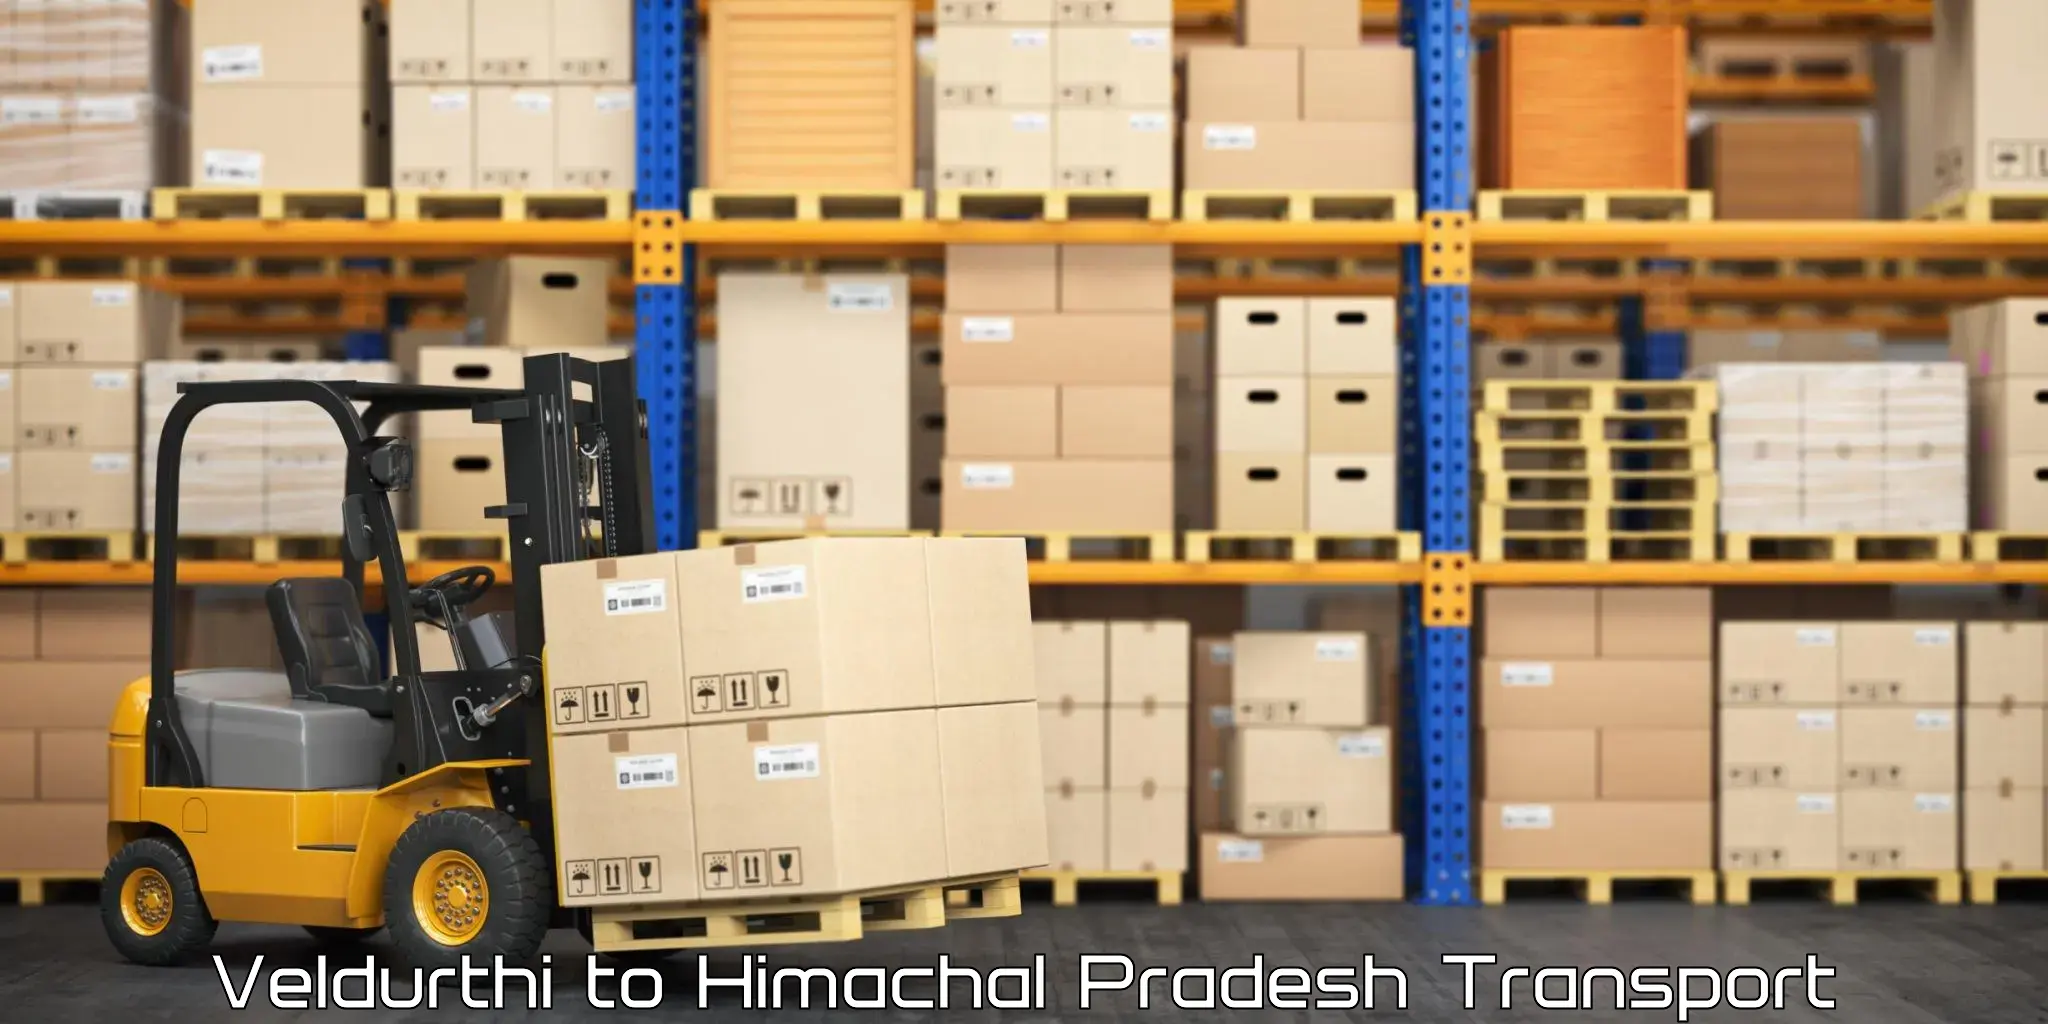 Cargo transportation services Veldurthi to Himachal Pradesh